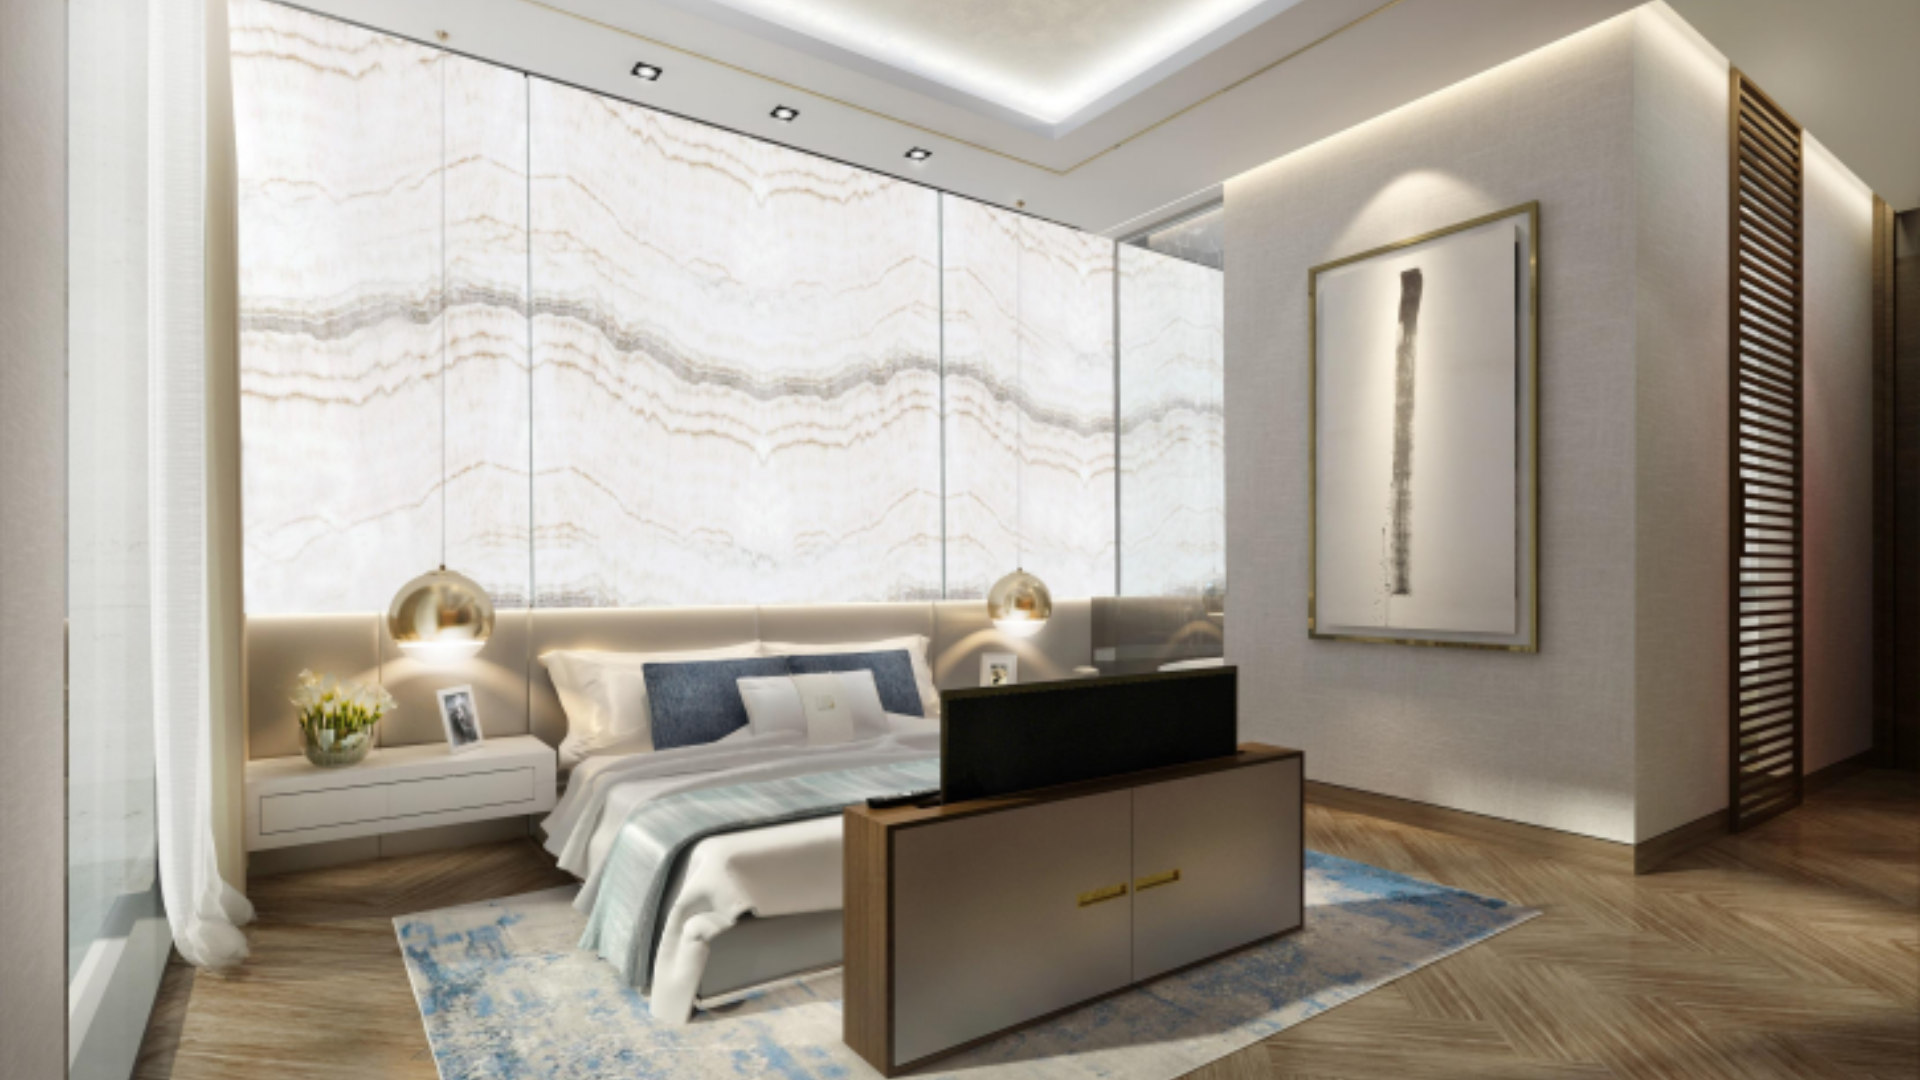 5 Bedroom Villa For Sale Dubai Hills Vista Lp09131 28a79a95dc109200.png